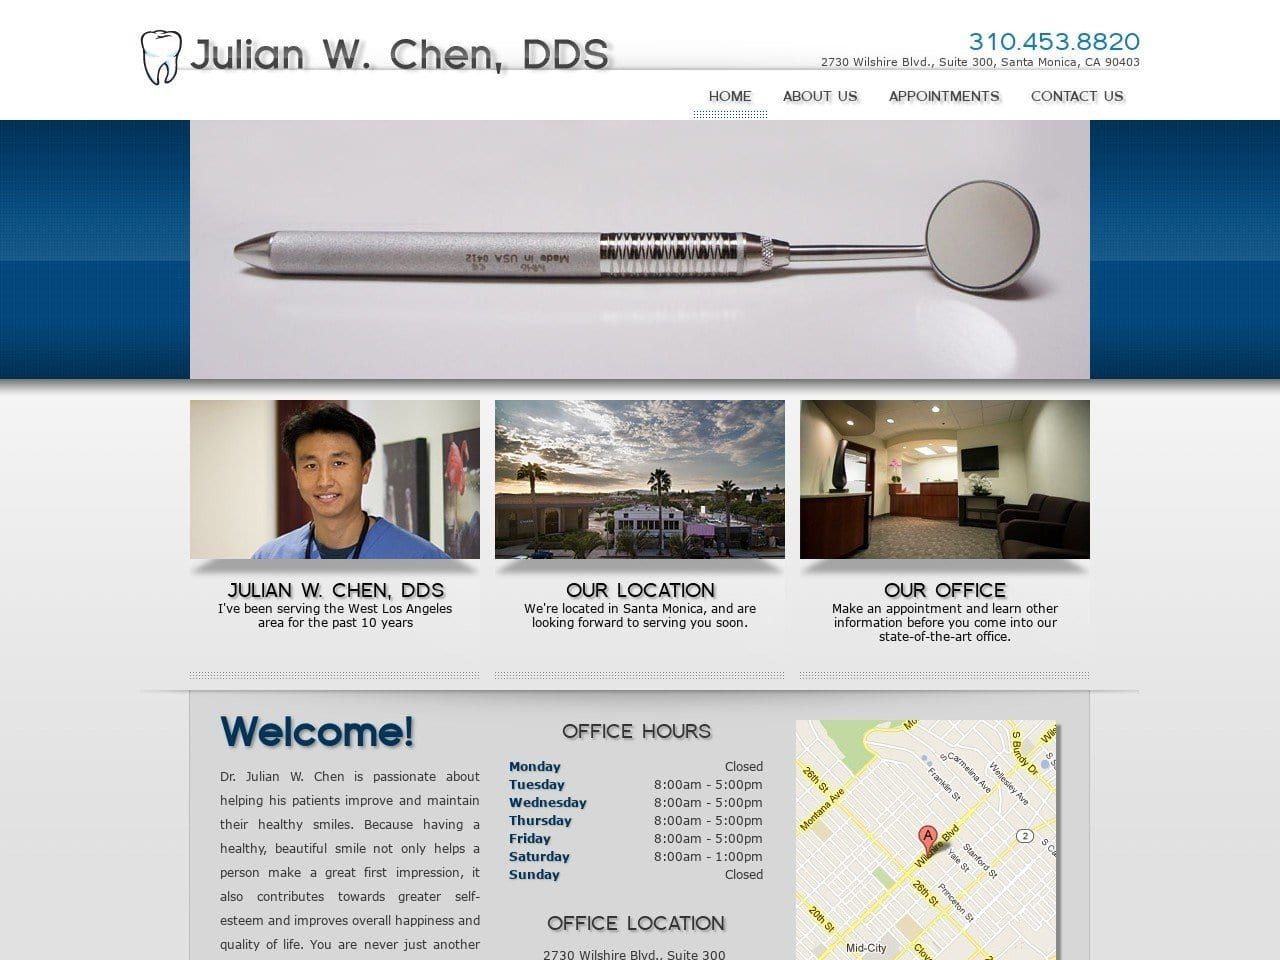 Dr. Julian W. Chen DDS Website Screenshot from julianchendds.com